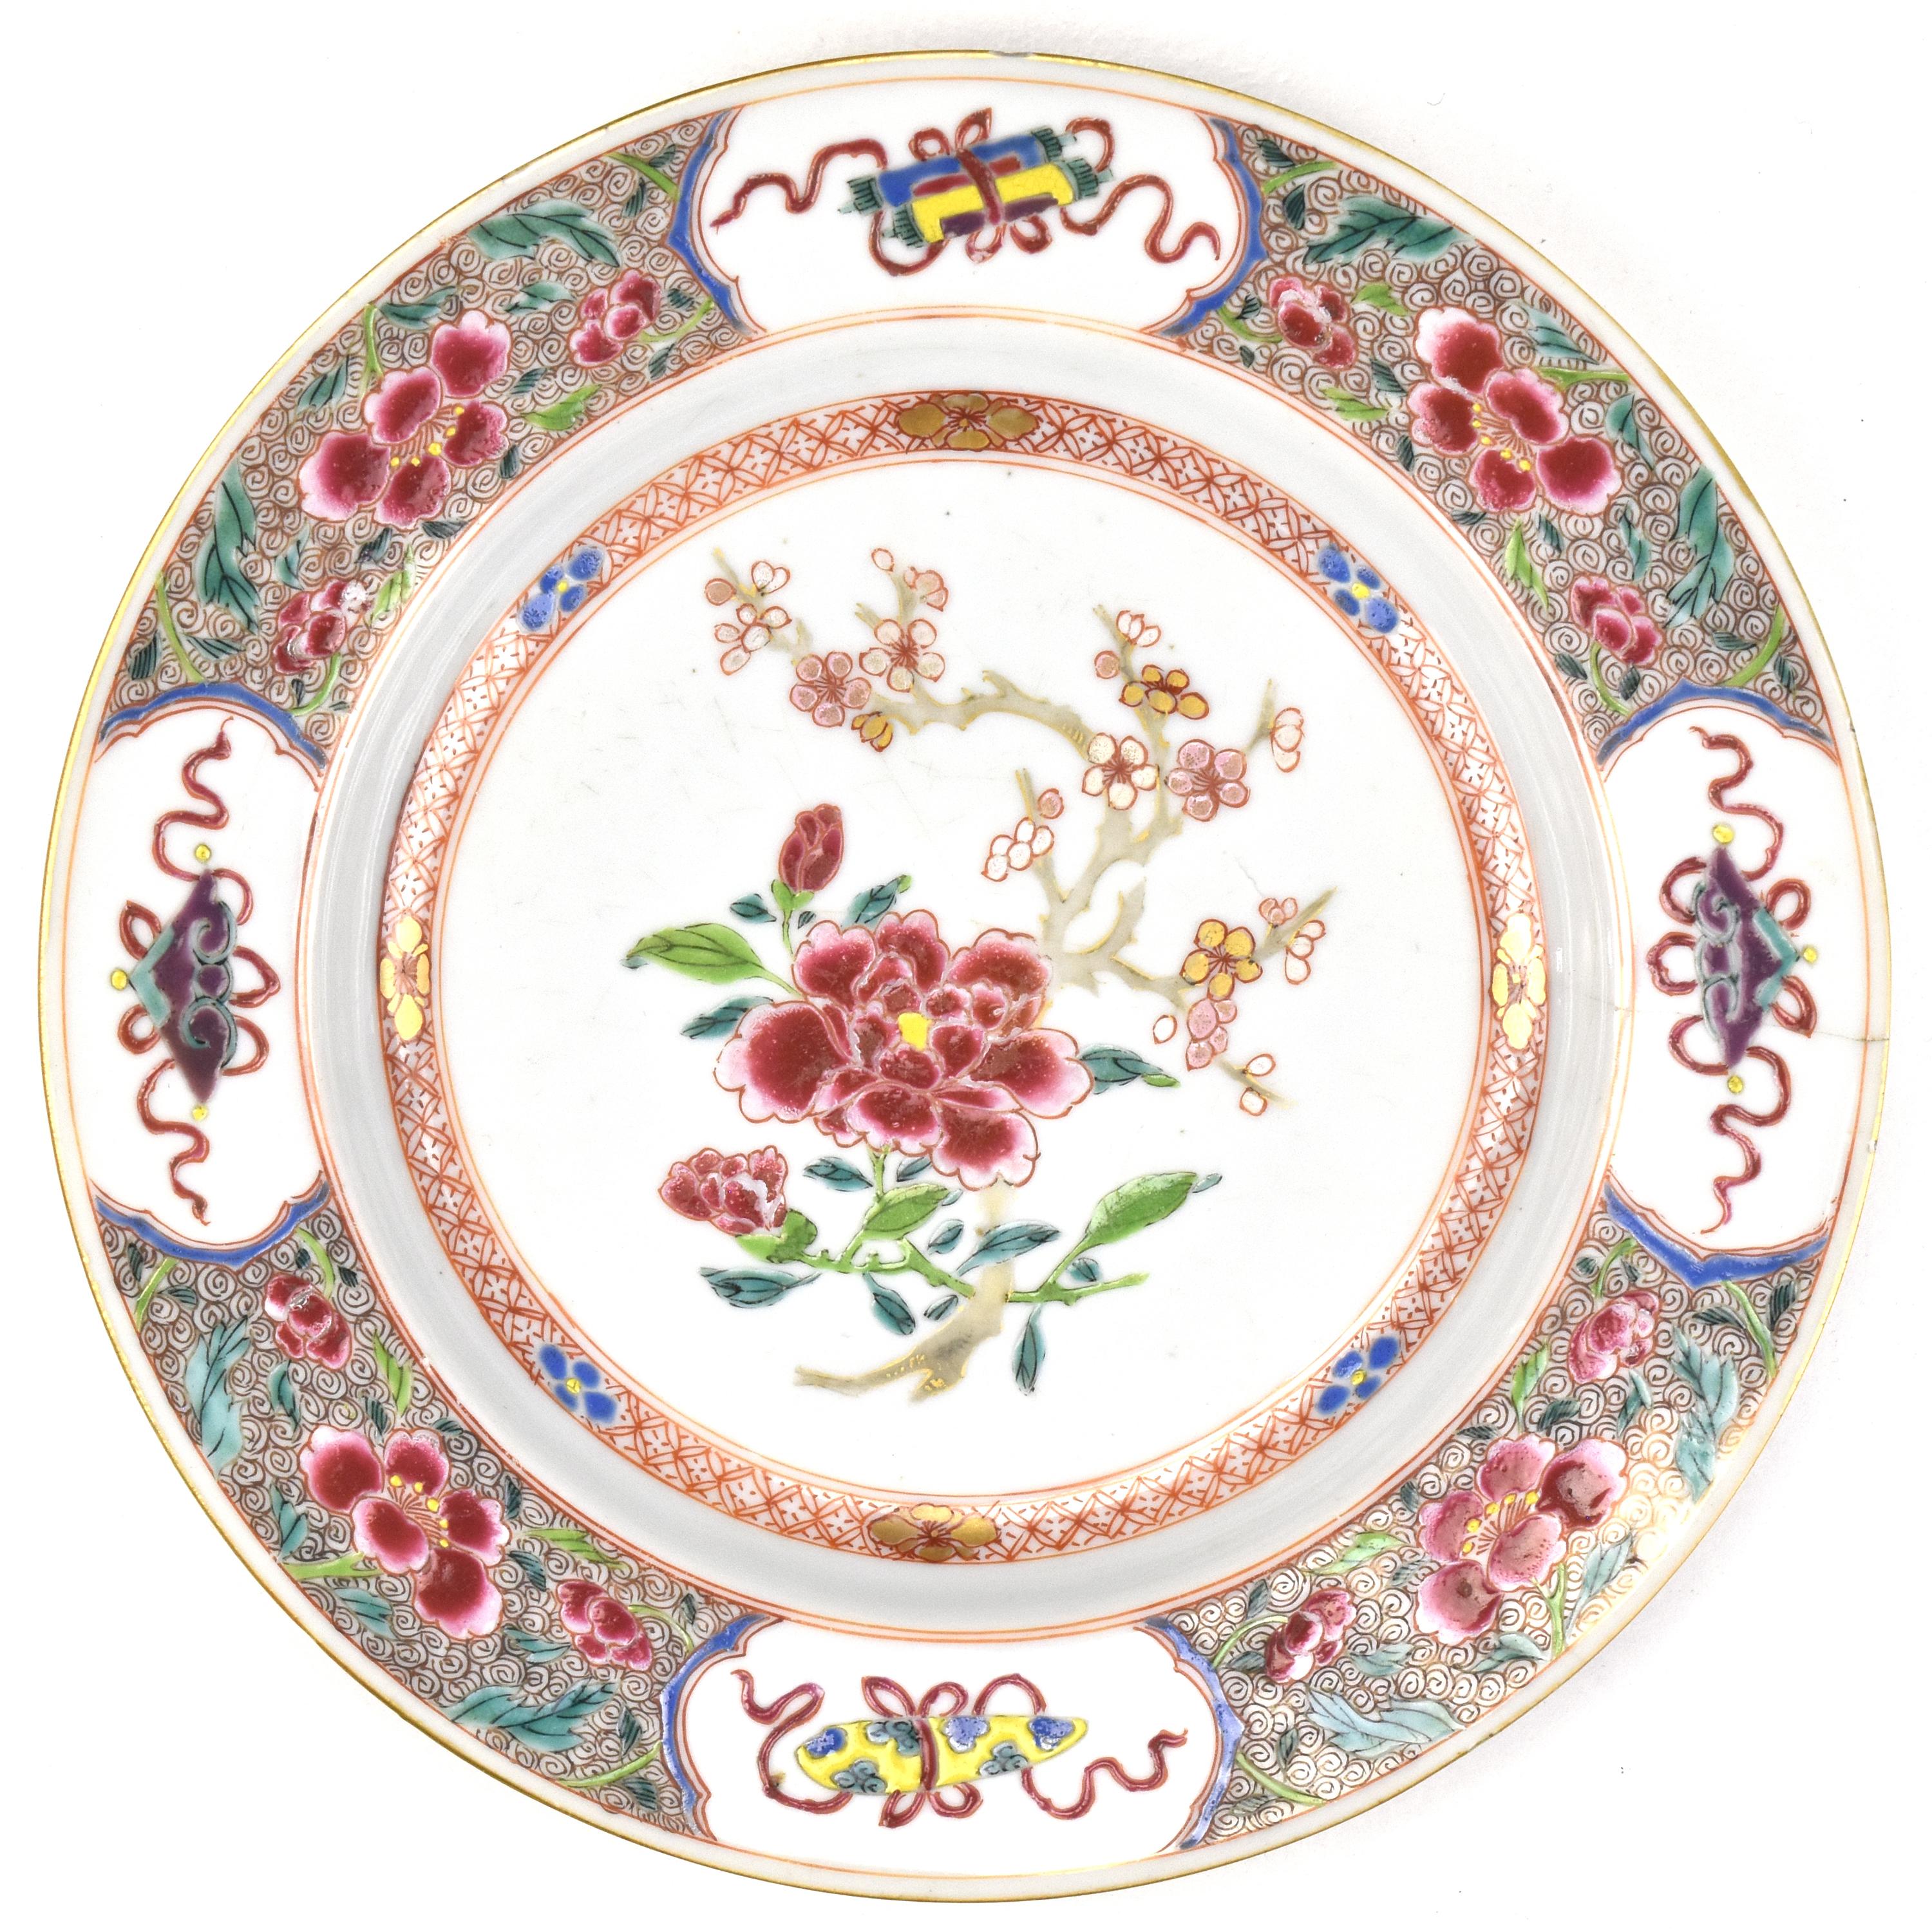 Dieser antike Kangxi-Teller ist ein wirklich außergewöhnliches Stück Porzellankunst. Er zeichnet sich durch eine exquisite Detailgenauigkeit aus und zeigt in der Mitte ein zartes Muster aus Chrysanthemen und Prunuszweigen. Dieses Muster ist ein